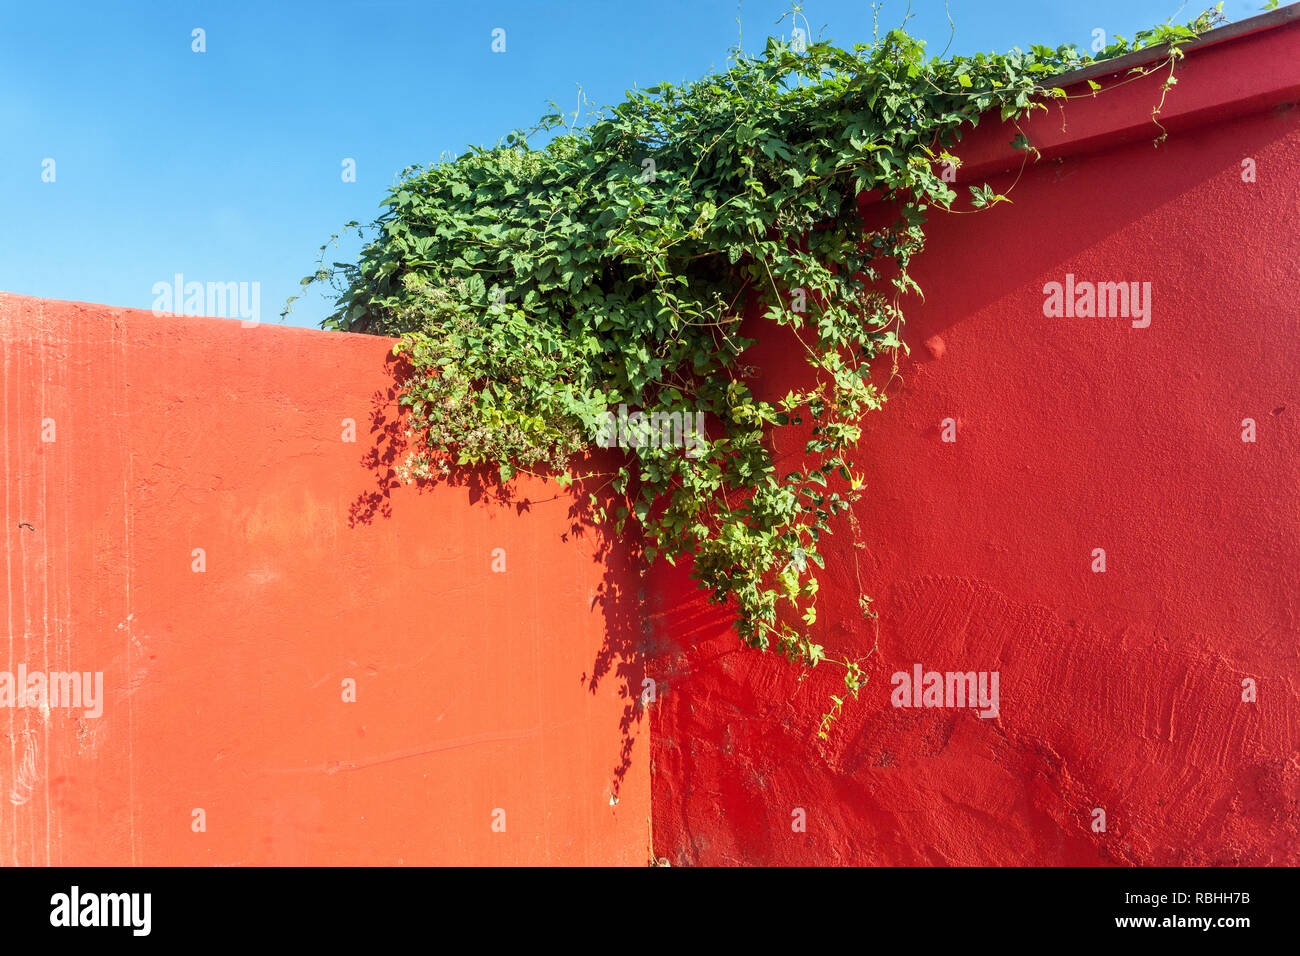 Contraste de color rojo, pared, cielo azul y verde planta trepadora Foto de stock